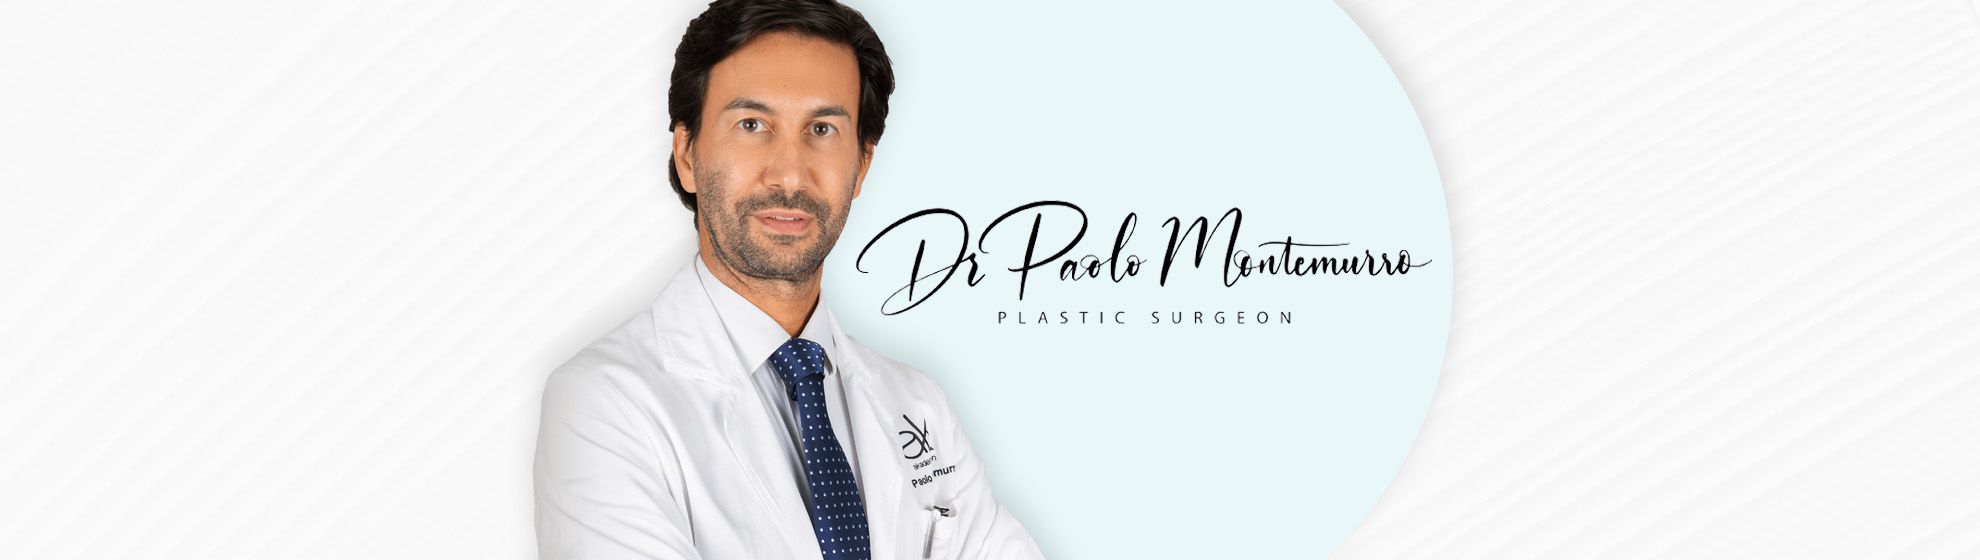 Dr. Paolo Montemurro